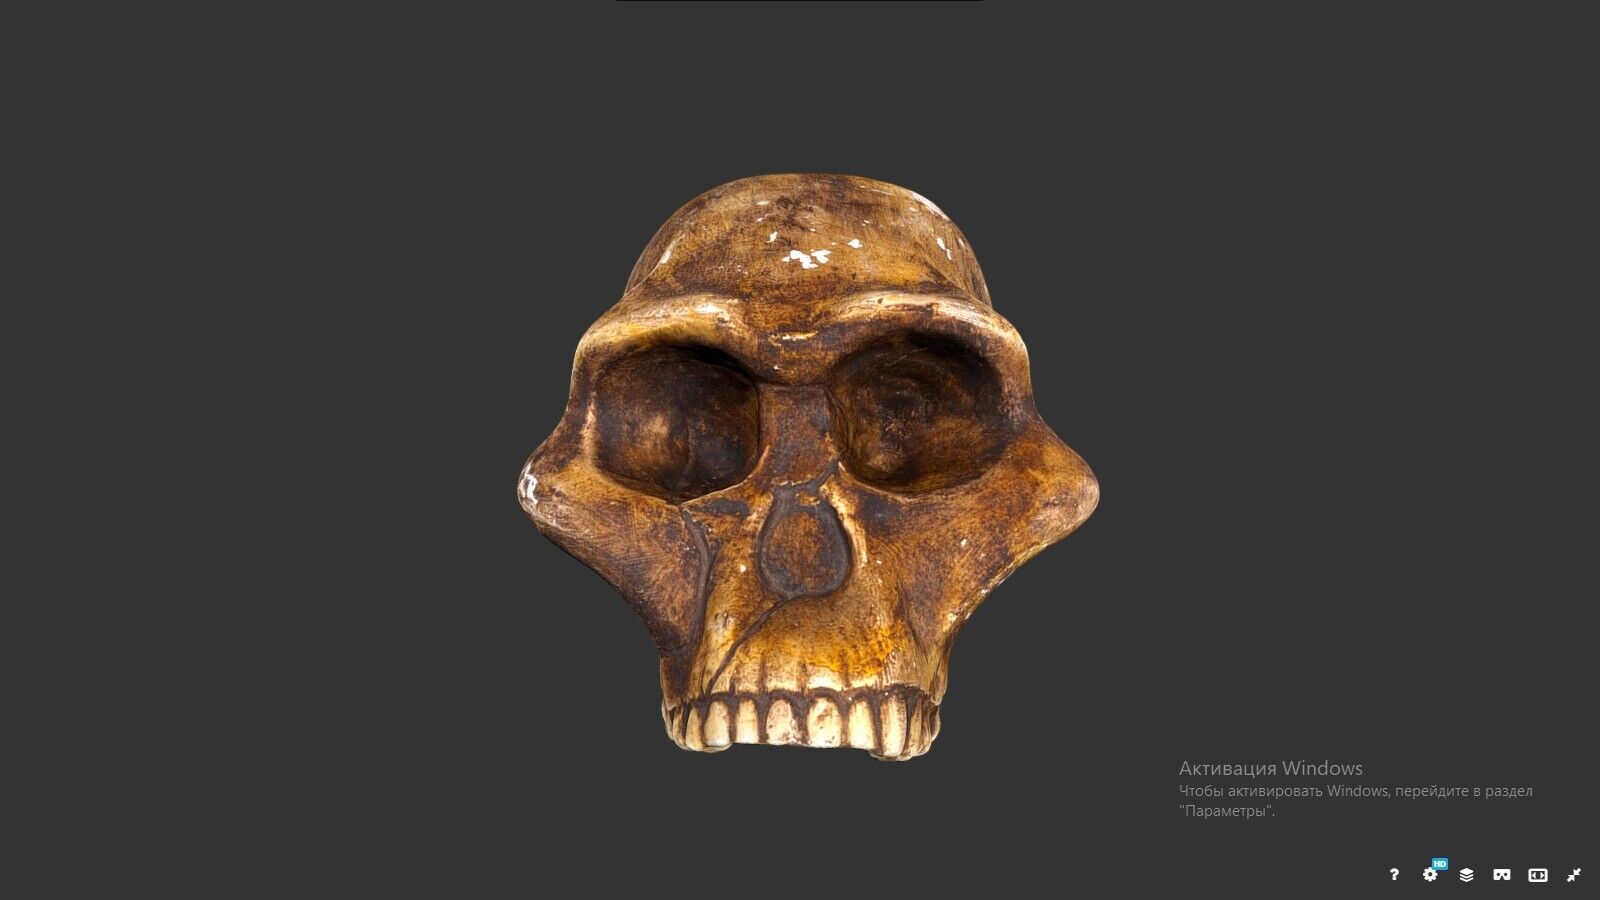  Australopithecus prometheus cranium replica Full-size reconstruction